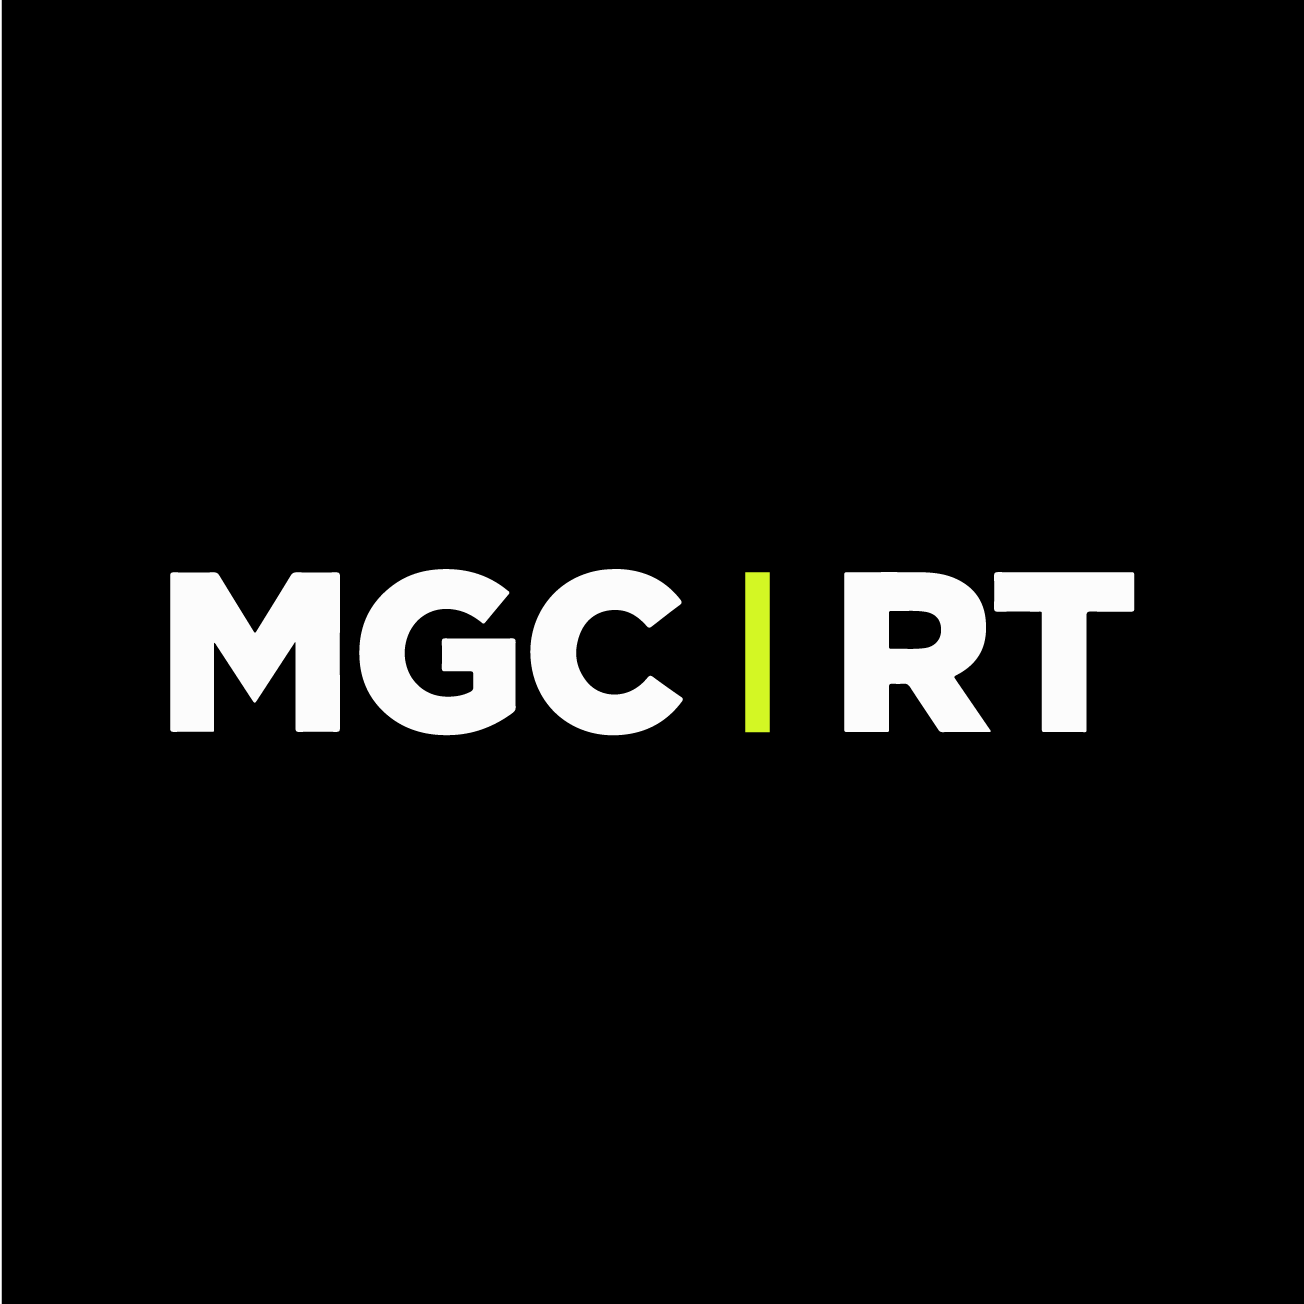 Club Image for MGC_RT